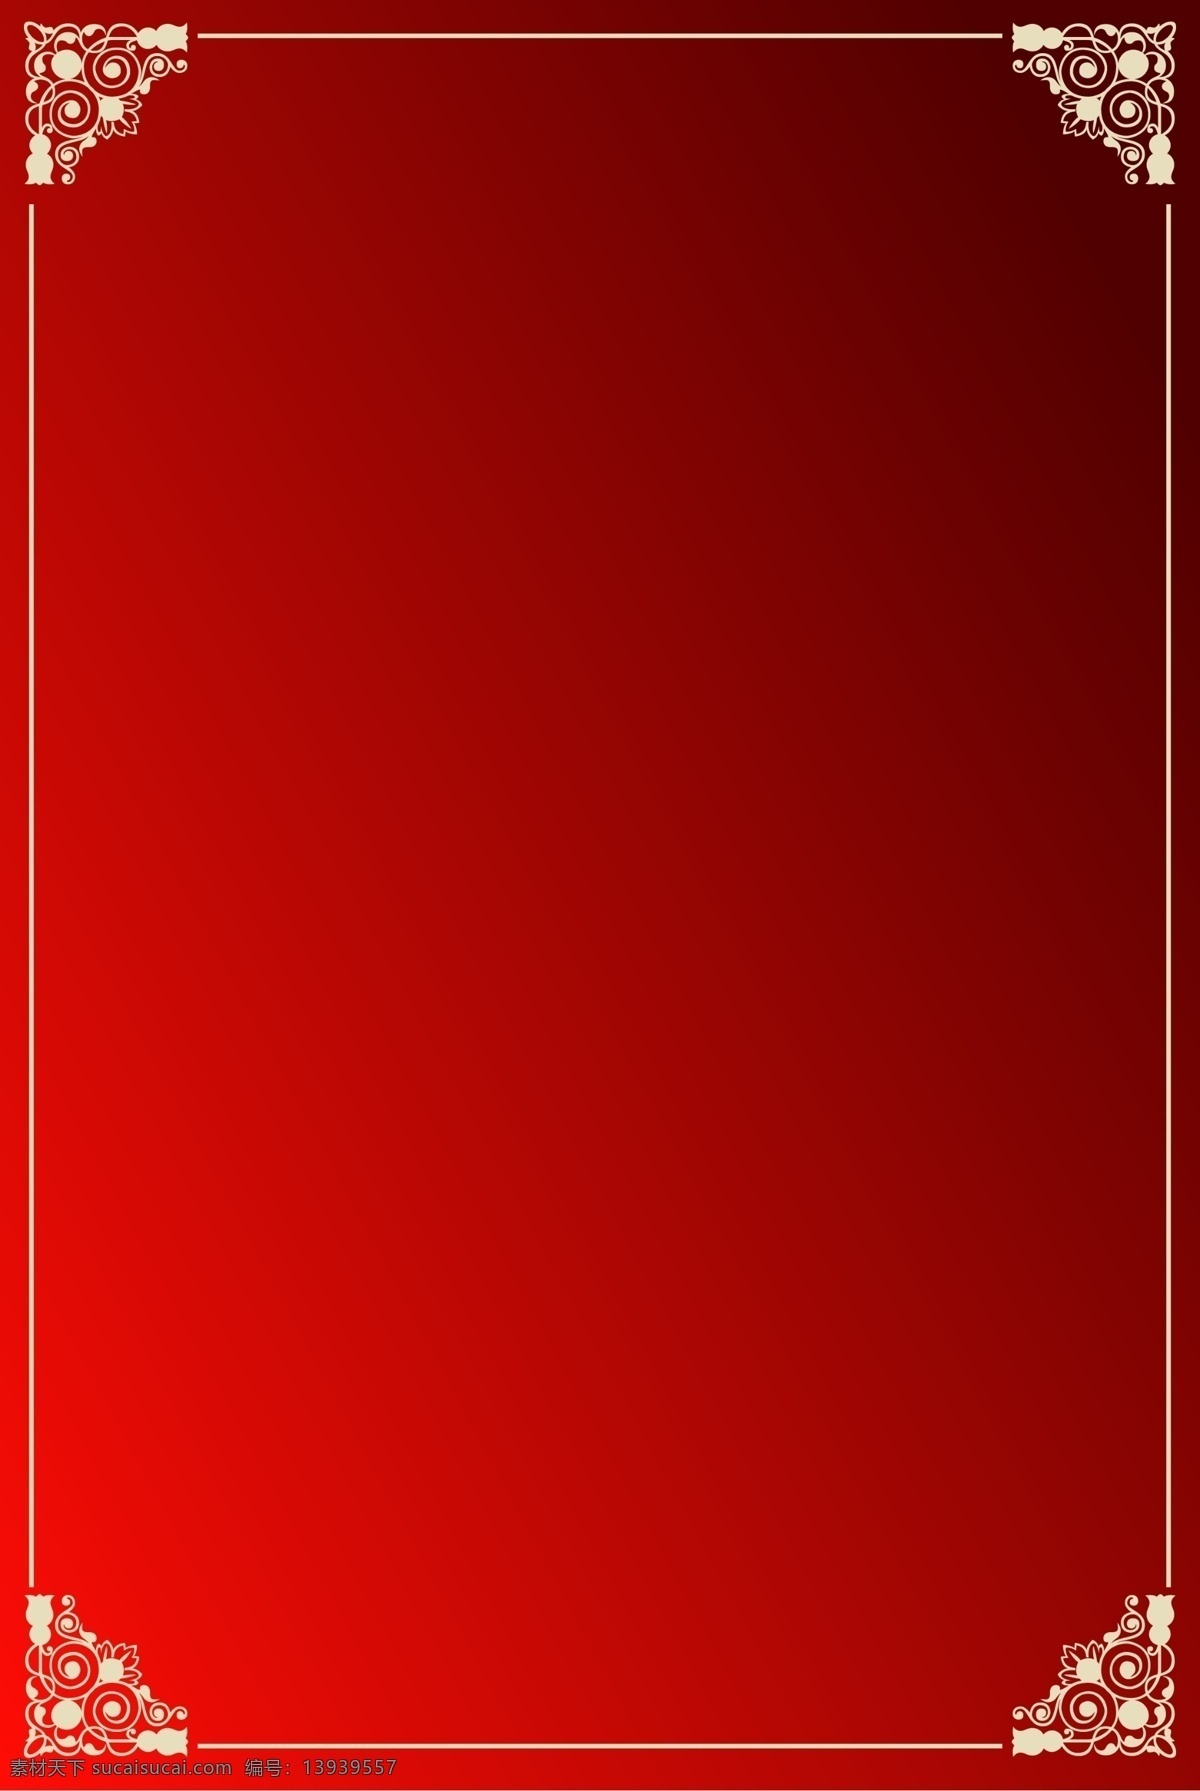 红色背景 边框 经典红 花纹 古典 中国风格 暗纹 分层